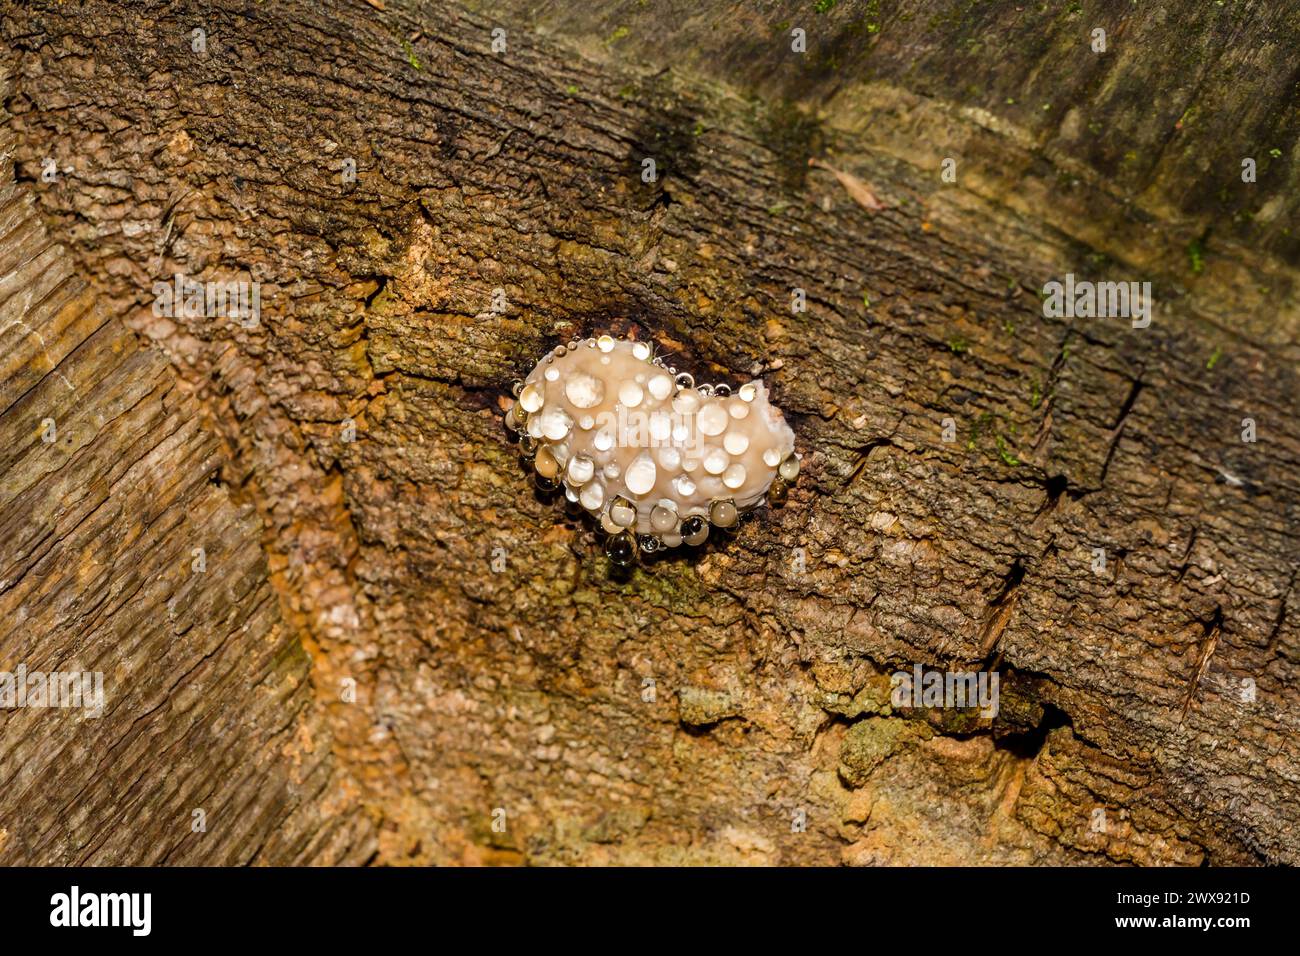 Rotgürtelkonkenpilz (Fomitopsis pinicola) - ein Trauerpilz - ein Pilz, der auf einem faulen Stumpf wächst und Wassertropfen absondert. Allgemeine Ansicht Stockfoto